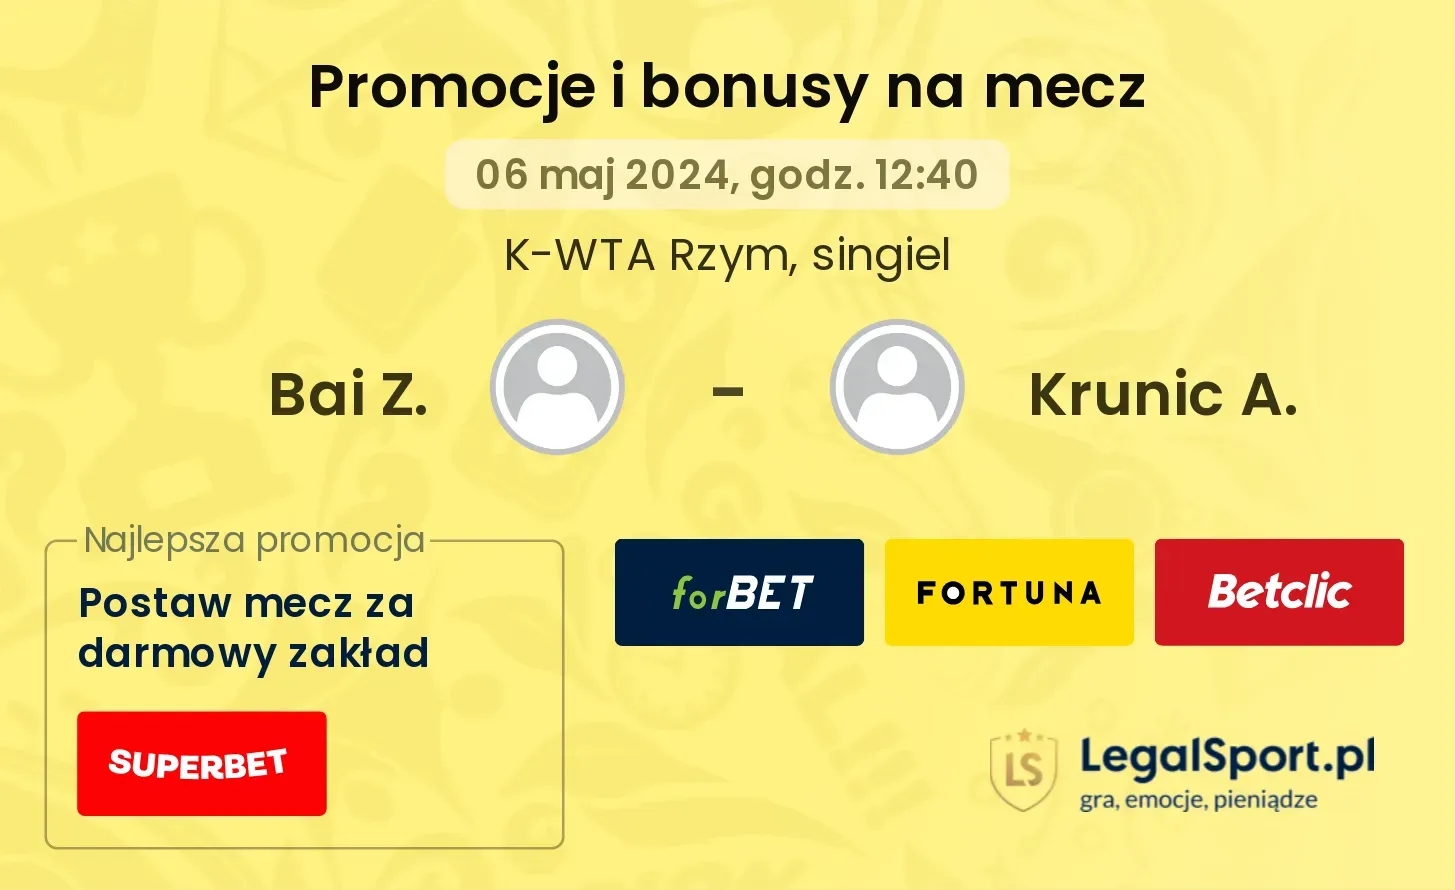 Bai Z. - Krunic A. promocje bonusy na mecz